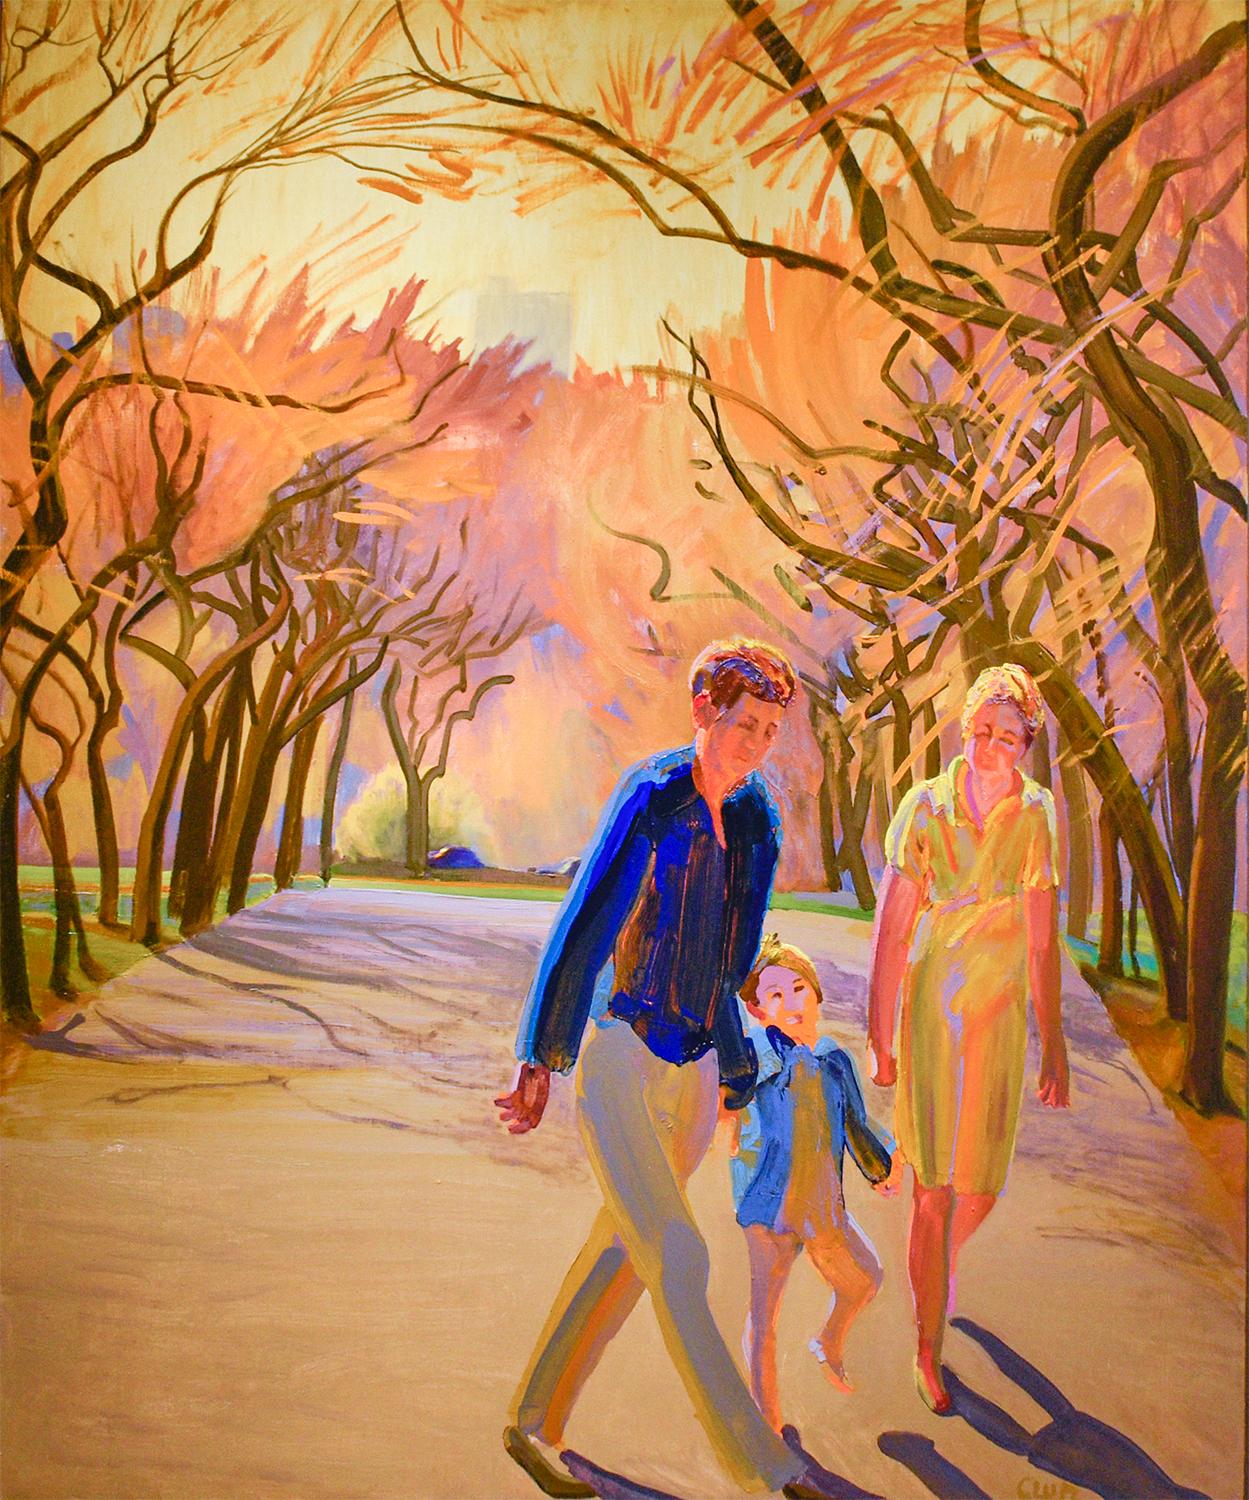 Figurative Painting William Clutz - Park Spring (peinture figurative impressionniste représentant des personnages dans un paysage de parc)